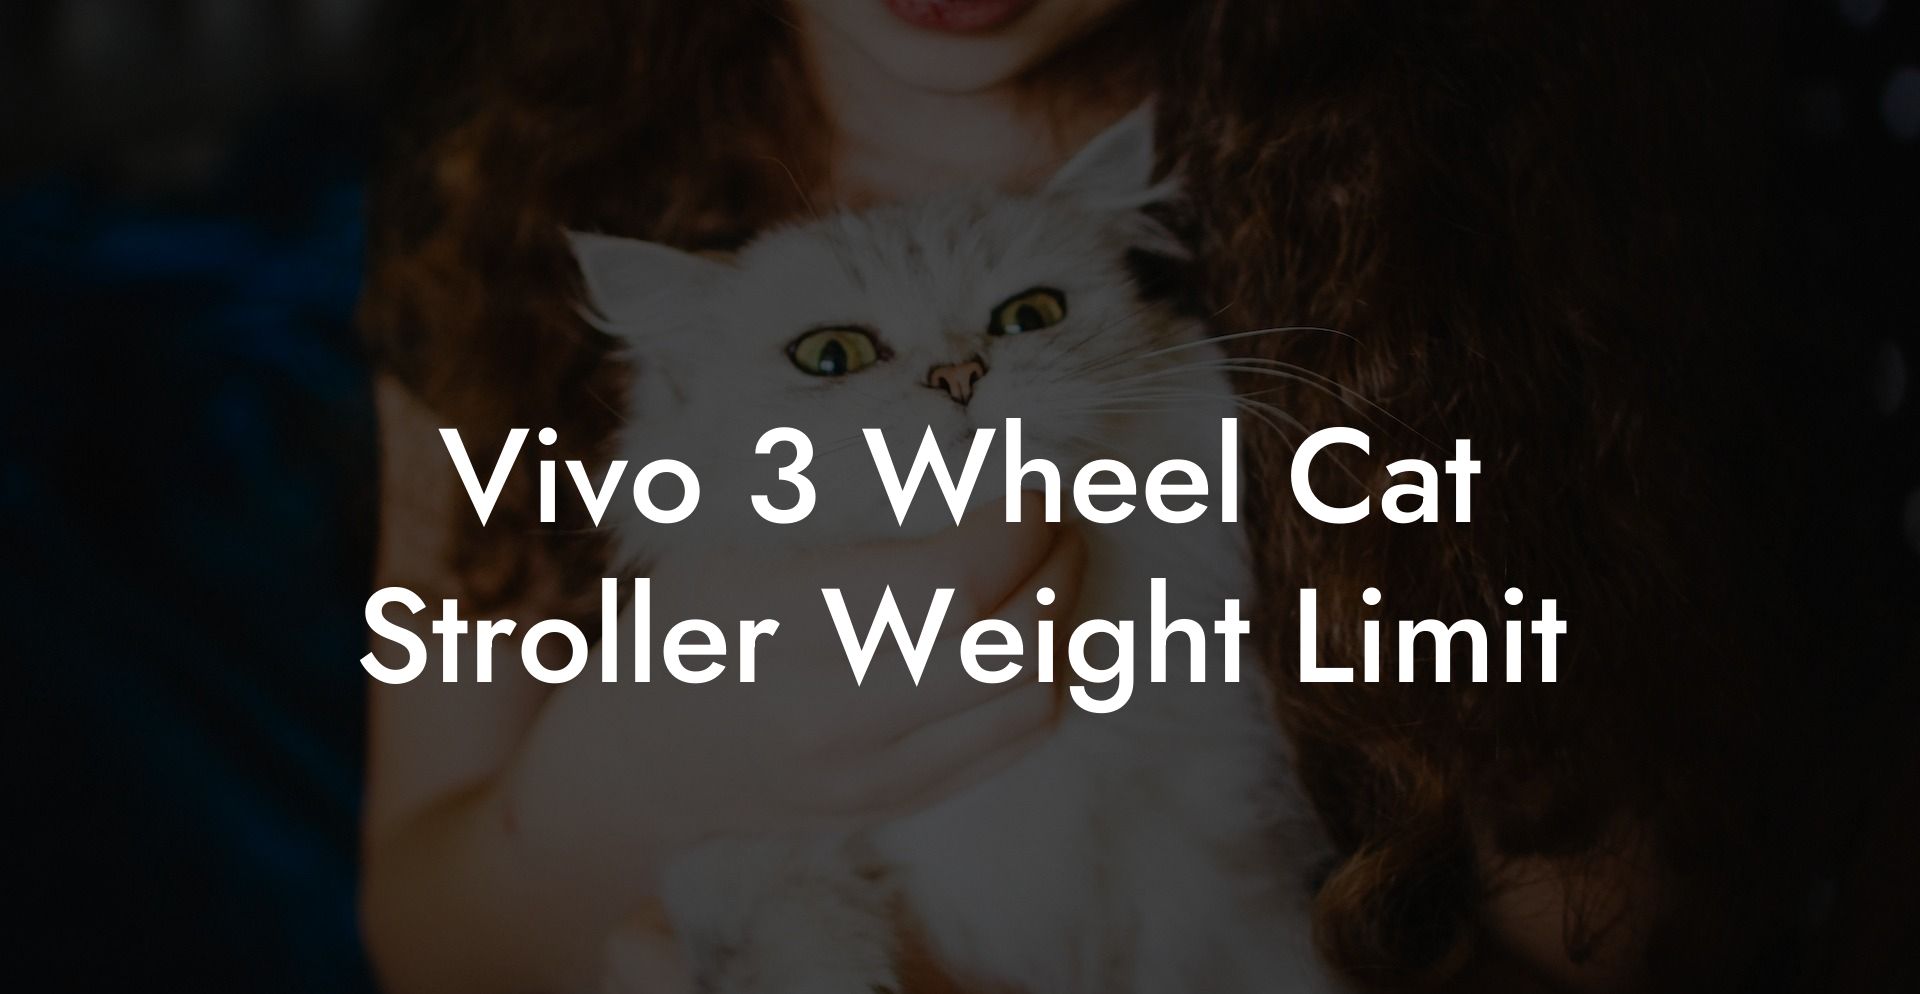 Vivo 3 Wheel Cat Stroller Weight Limit